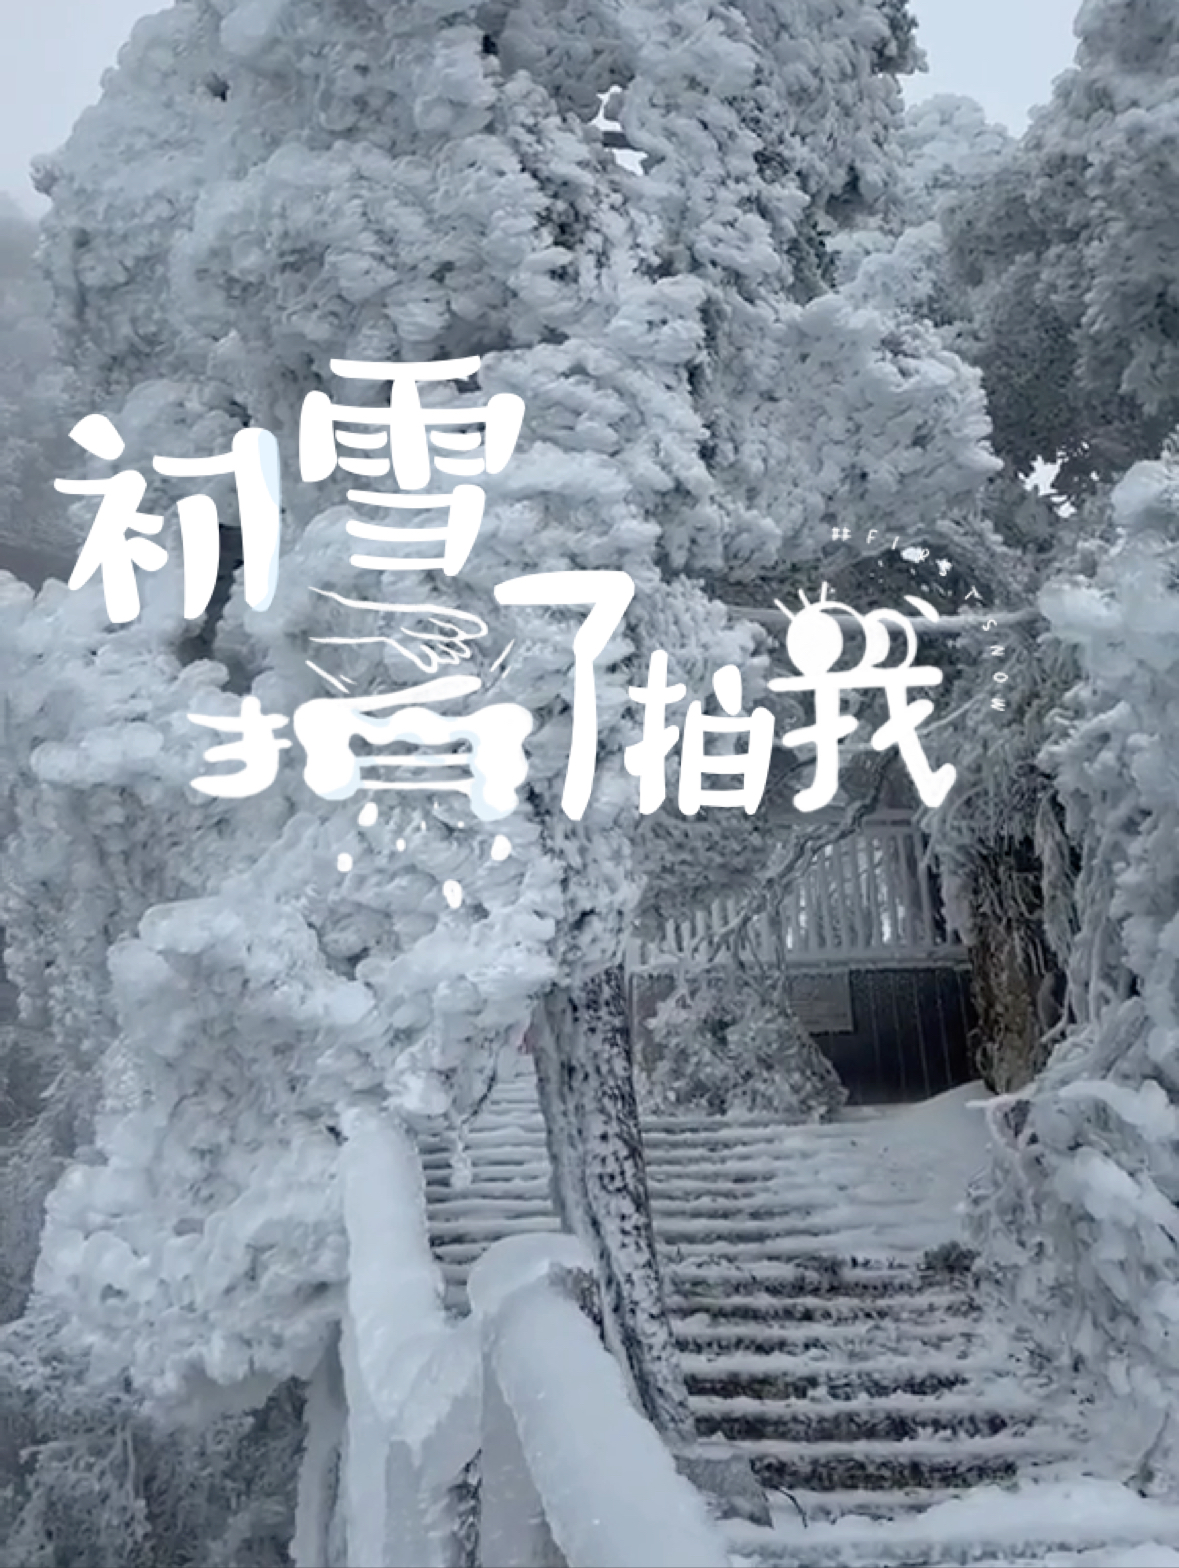 莽山 莽山·宜章不用去哈尔滨，也不用去老君山，湖南莽山也能看见如此壮观的雪景！#一座不用爬的山 #莽